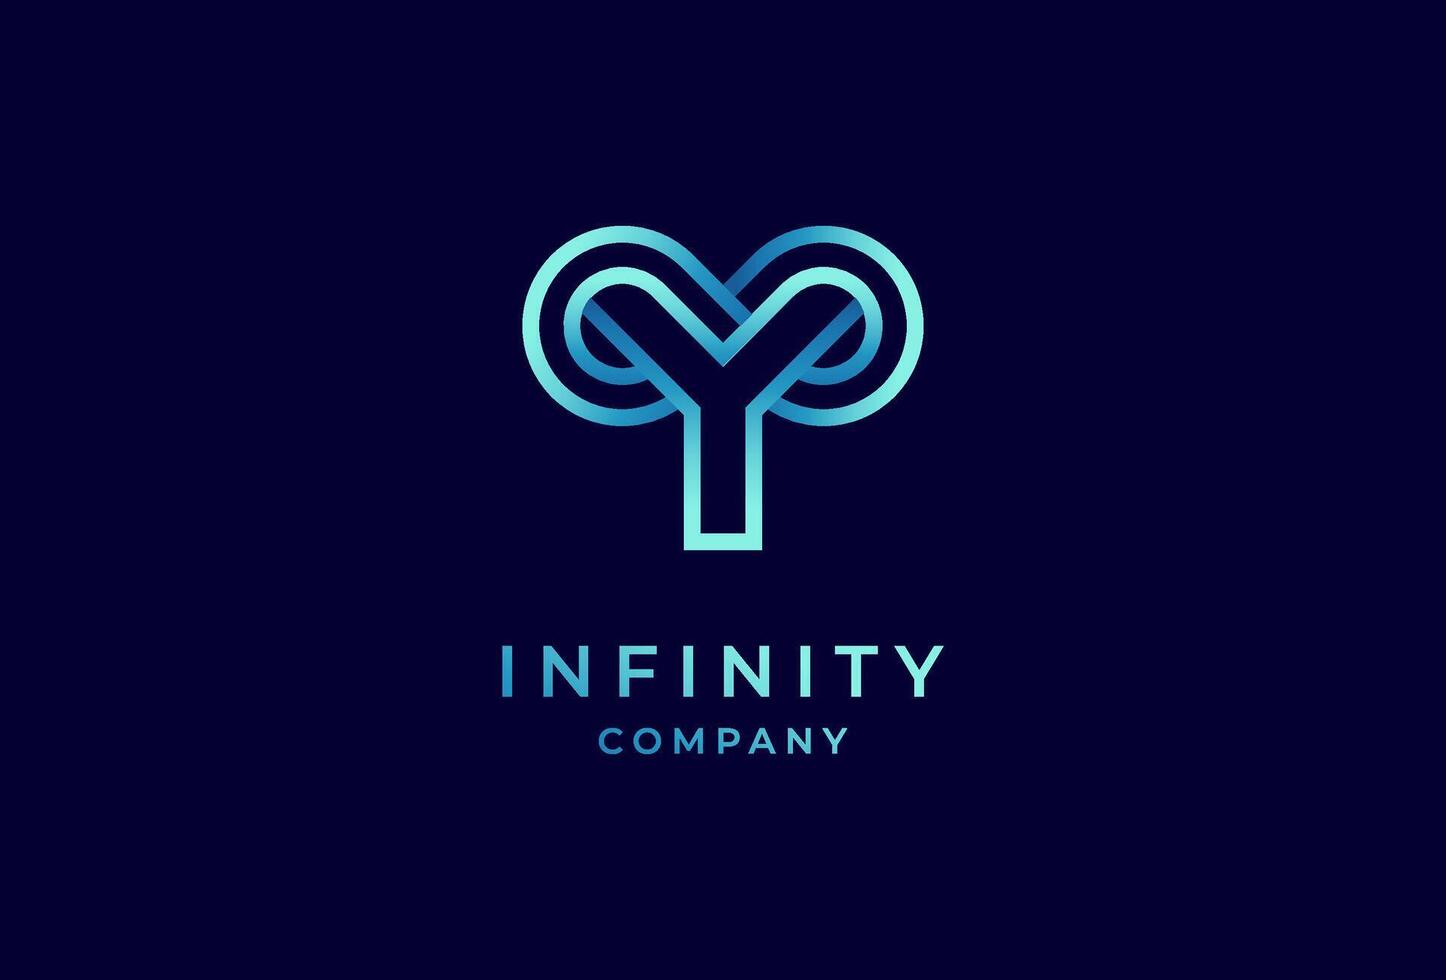 infini logo, lettre y avec infini combinaison, adapté pour technologie, marque et entreprise logo conception, illustration vecteur